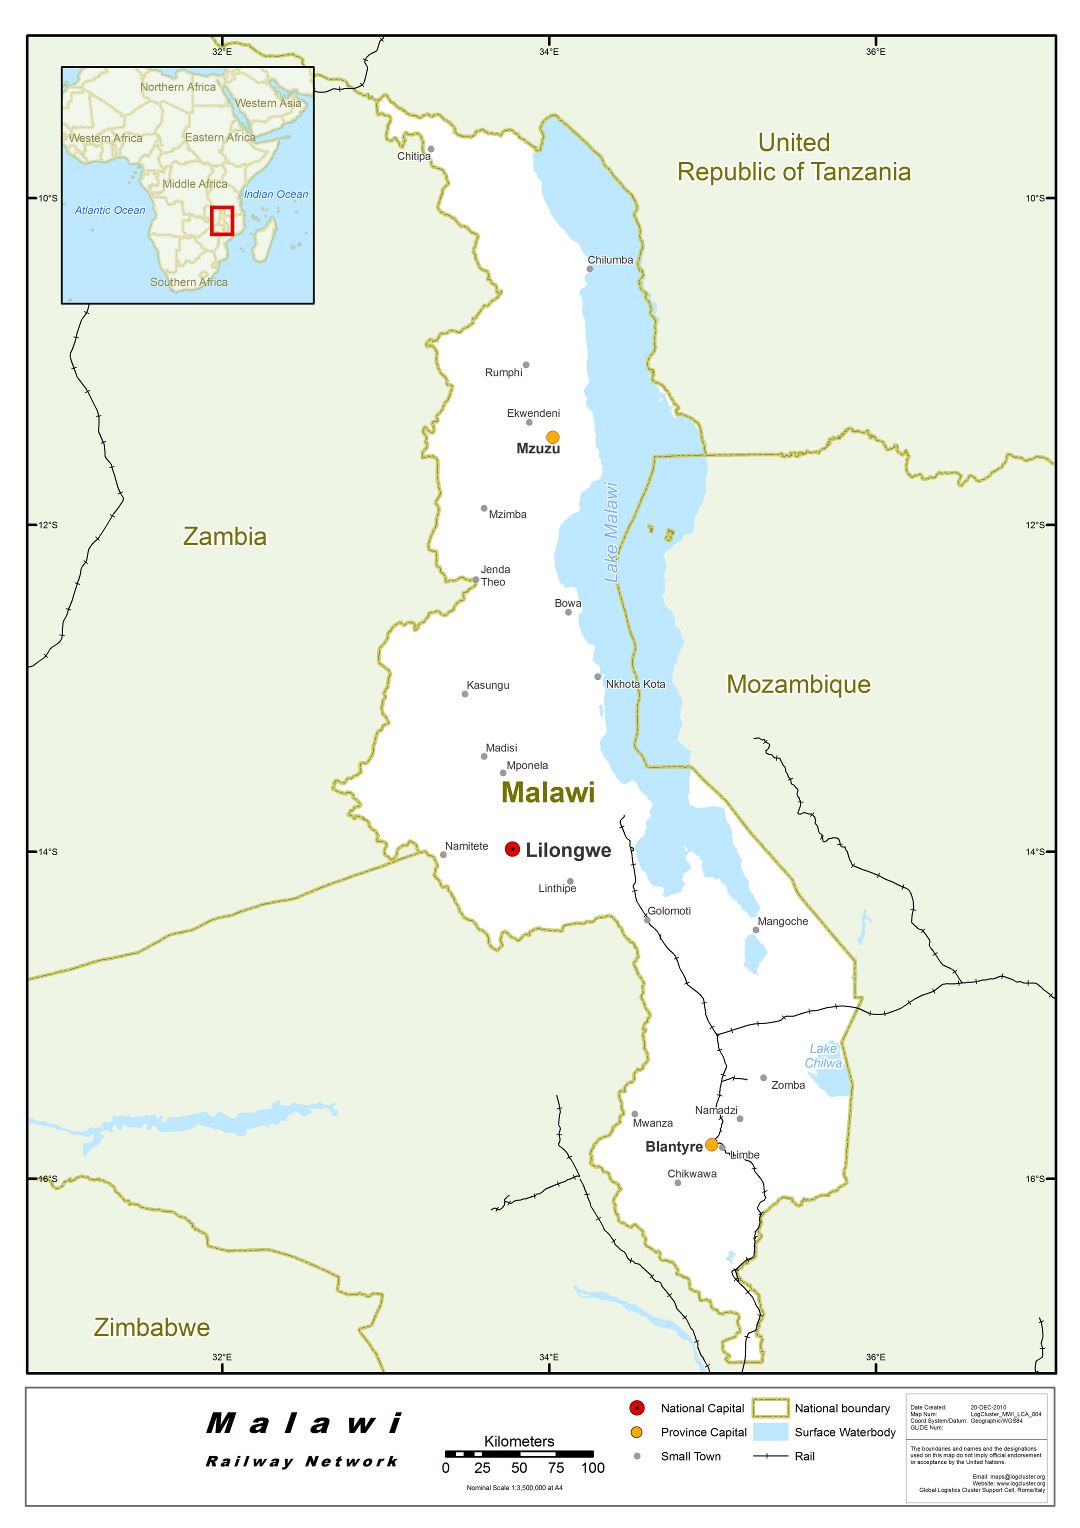 Большая подробная карта сети железных дорог Малави